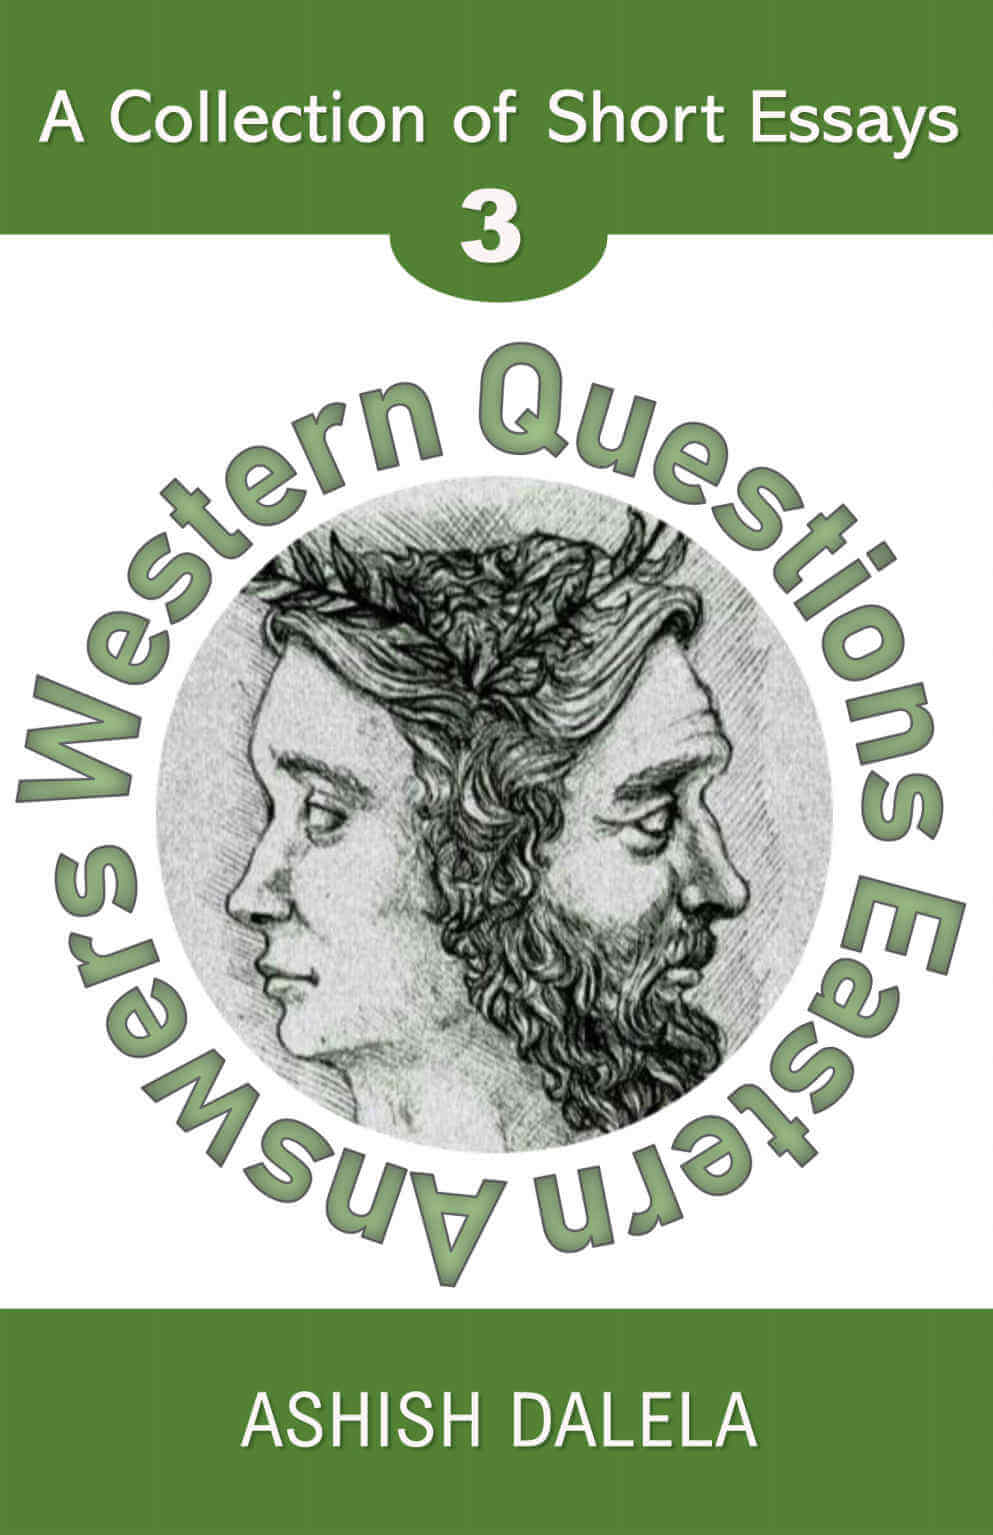 Perguntas Ocidentais Respostas Orientais: Uma Coleção de Ensaios Curtos - Volume 3